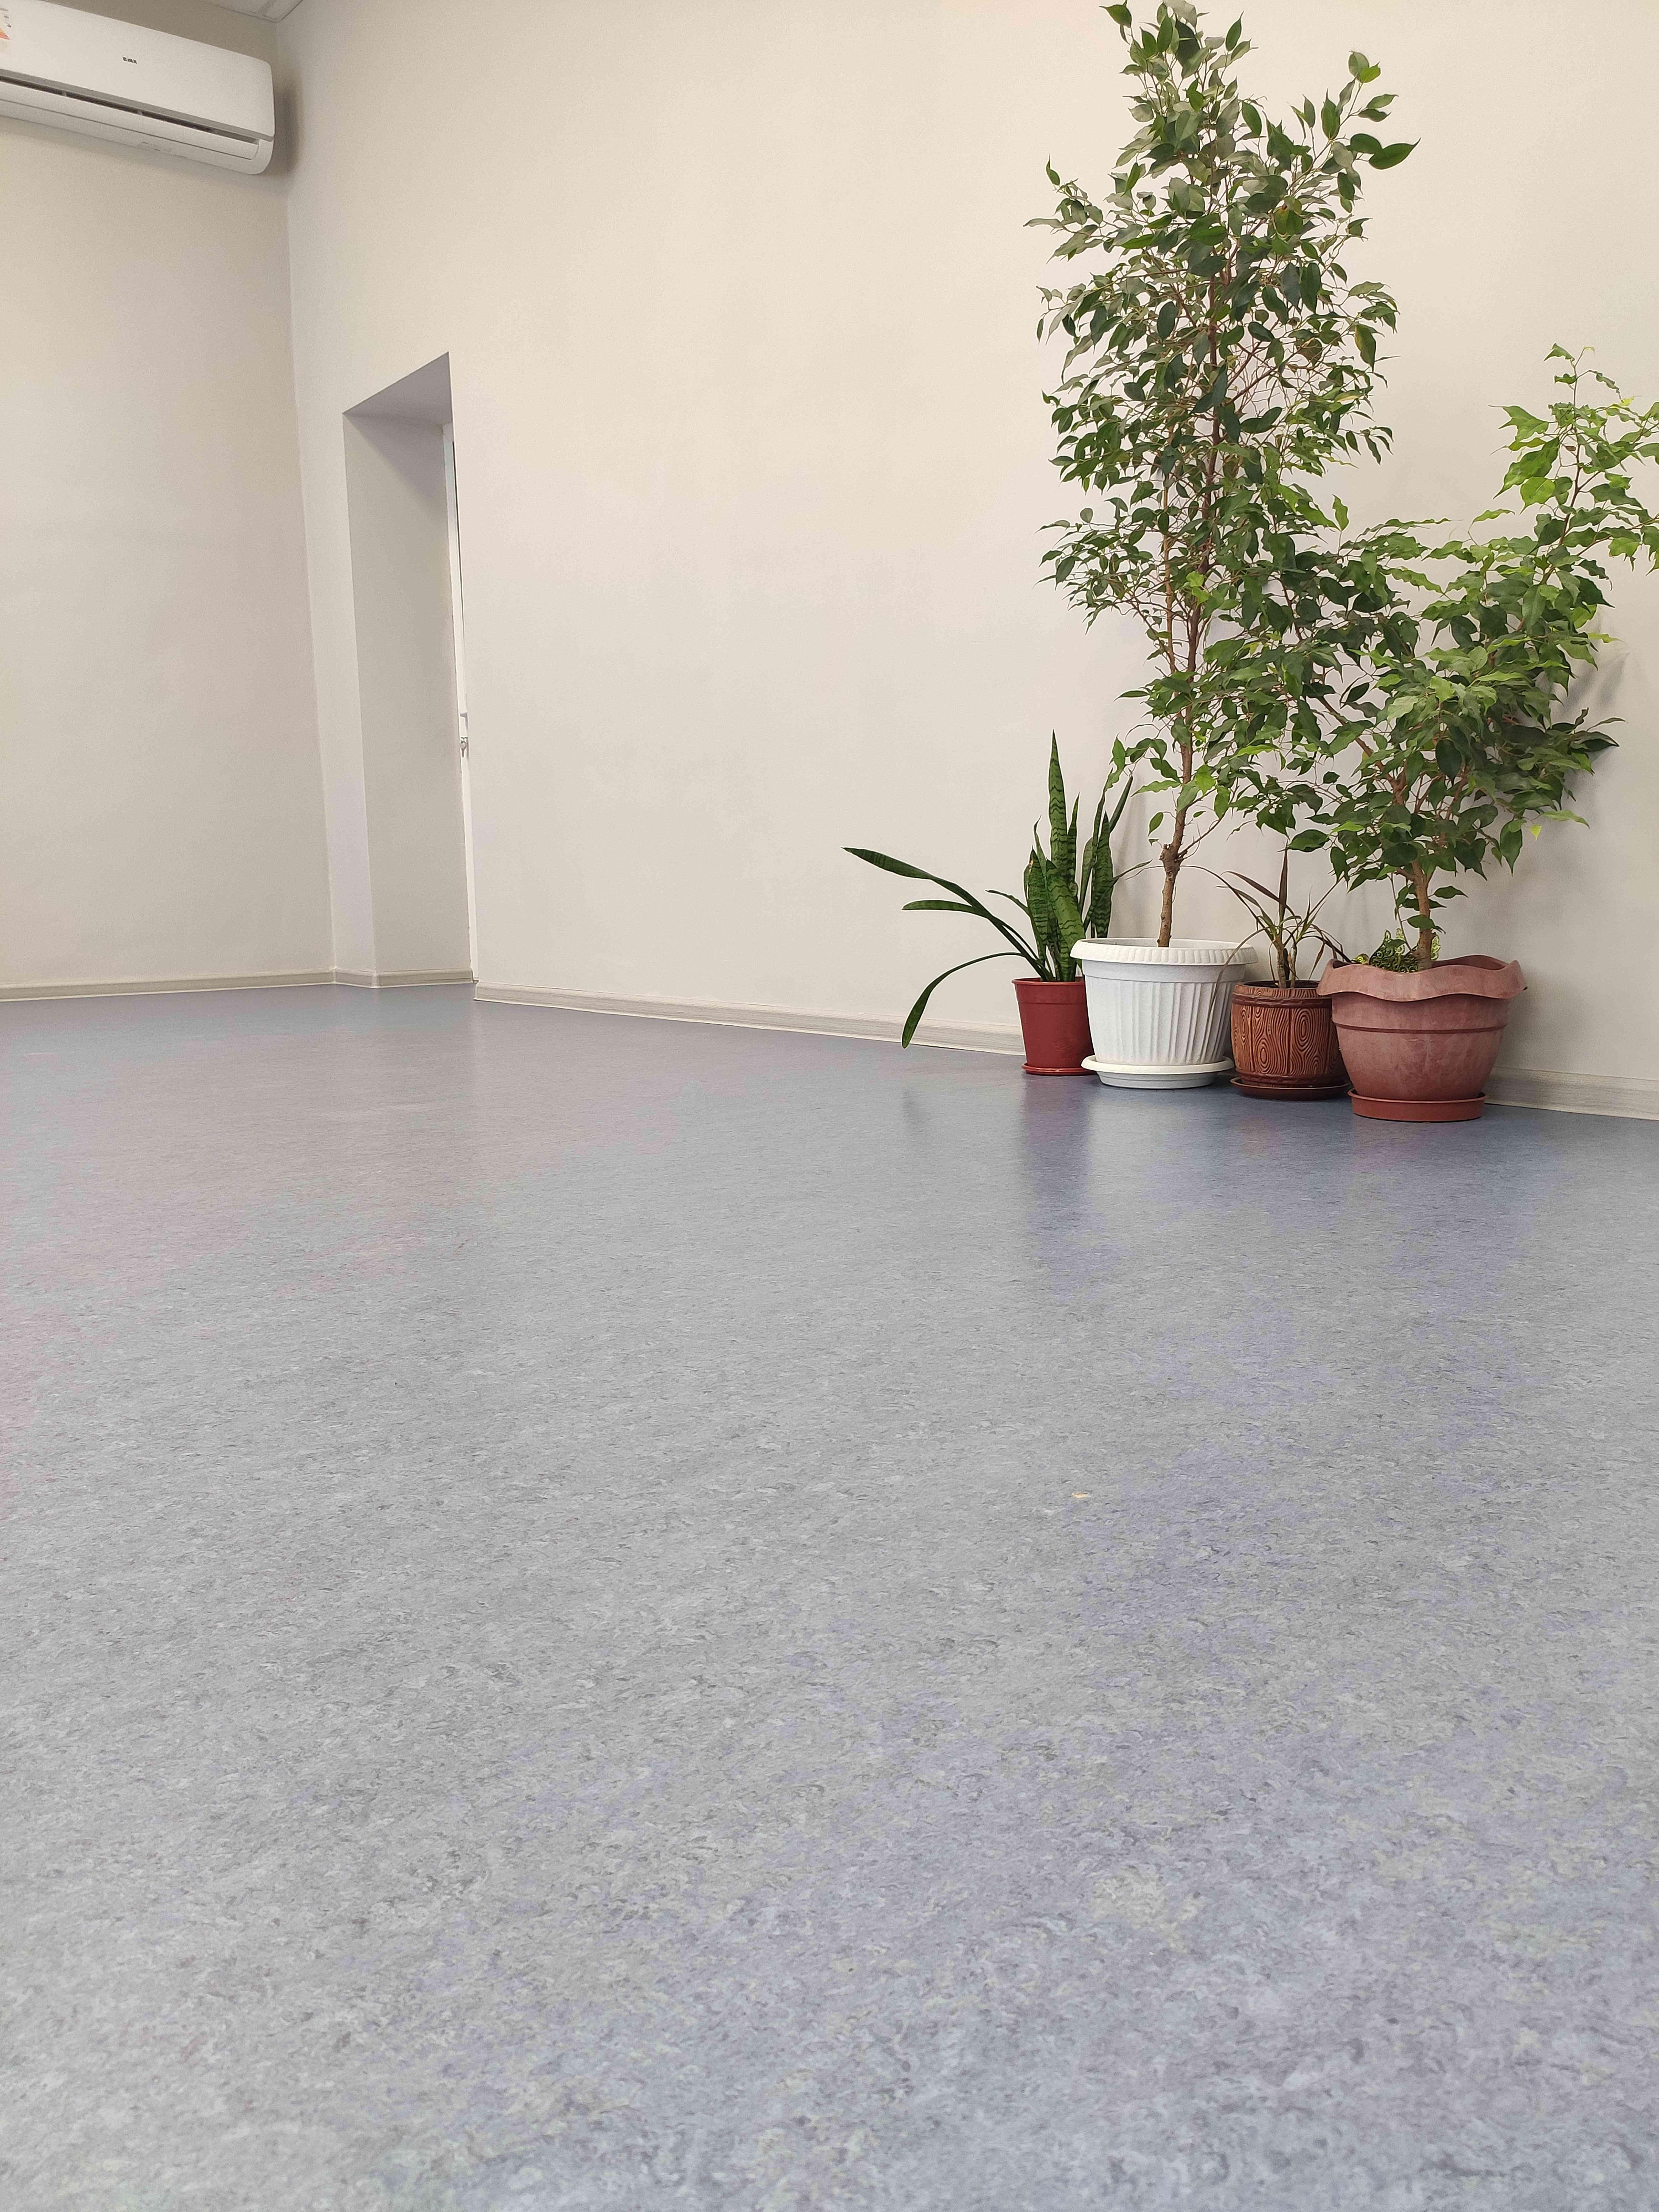 Натуральный линолеум Marmorette PUR Geflor DLW Flooring в региональном модельном центре Республики Адыгея﻿﻿﻿﻿﻿﻿﻿﻿﻿﻿﻿﻿ в г. Майкоп